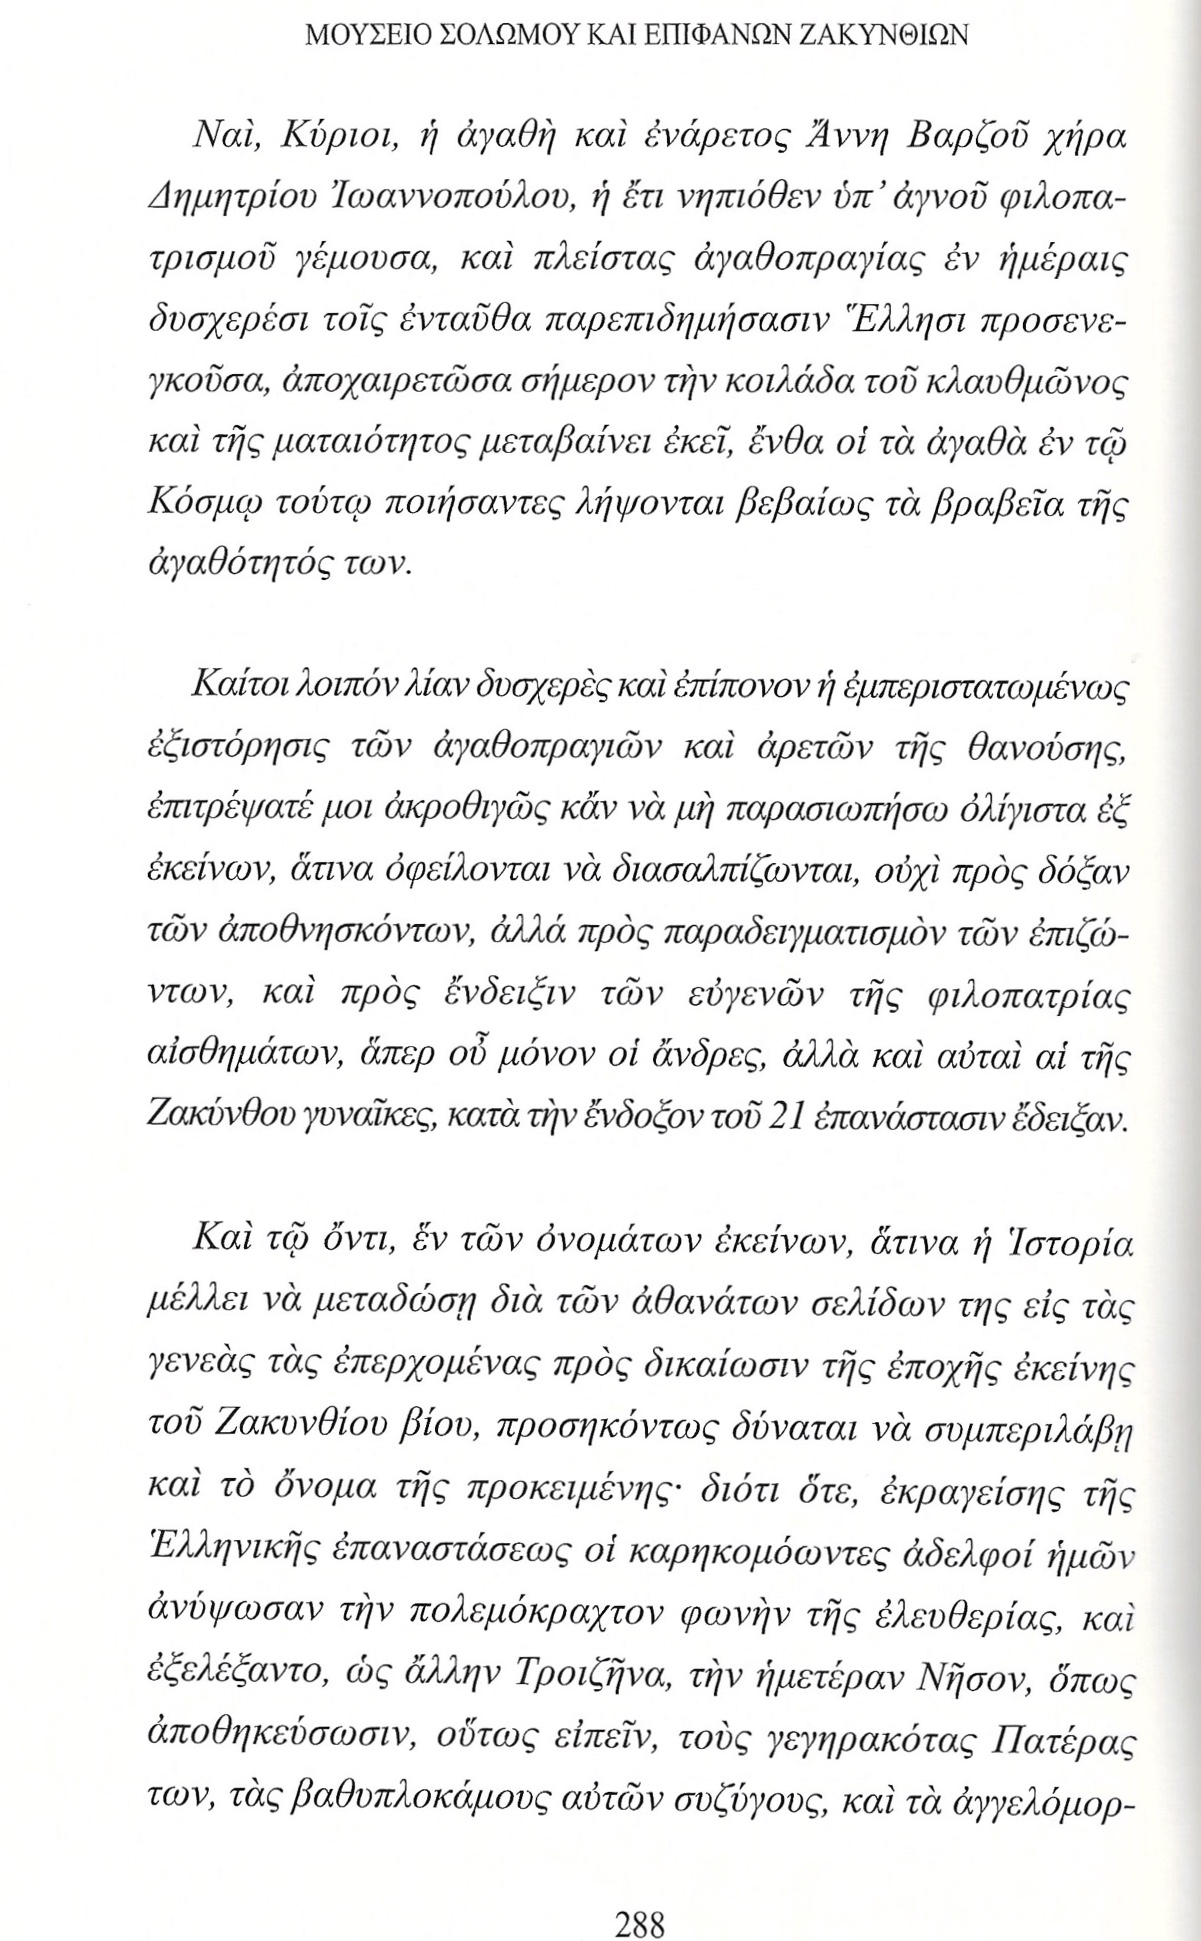 Η Ζακυνθινή Άννη Βαρζού και η Εθνική Παλιγγενεσία, Πρακτικά Διαδικτυακού Συνεδρίου, σ. 288